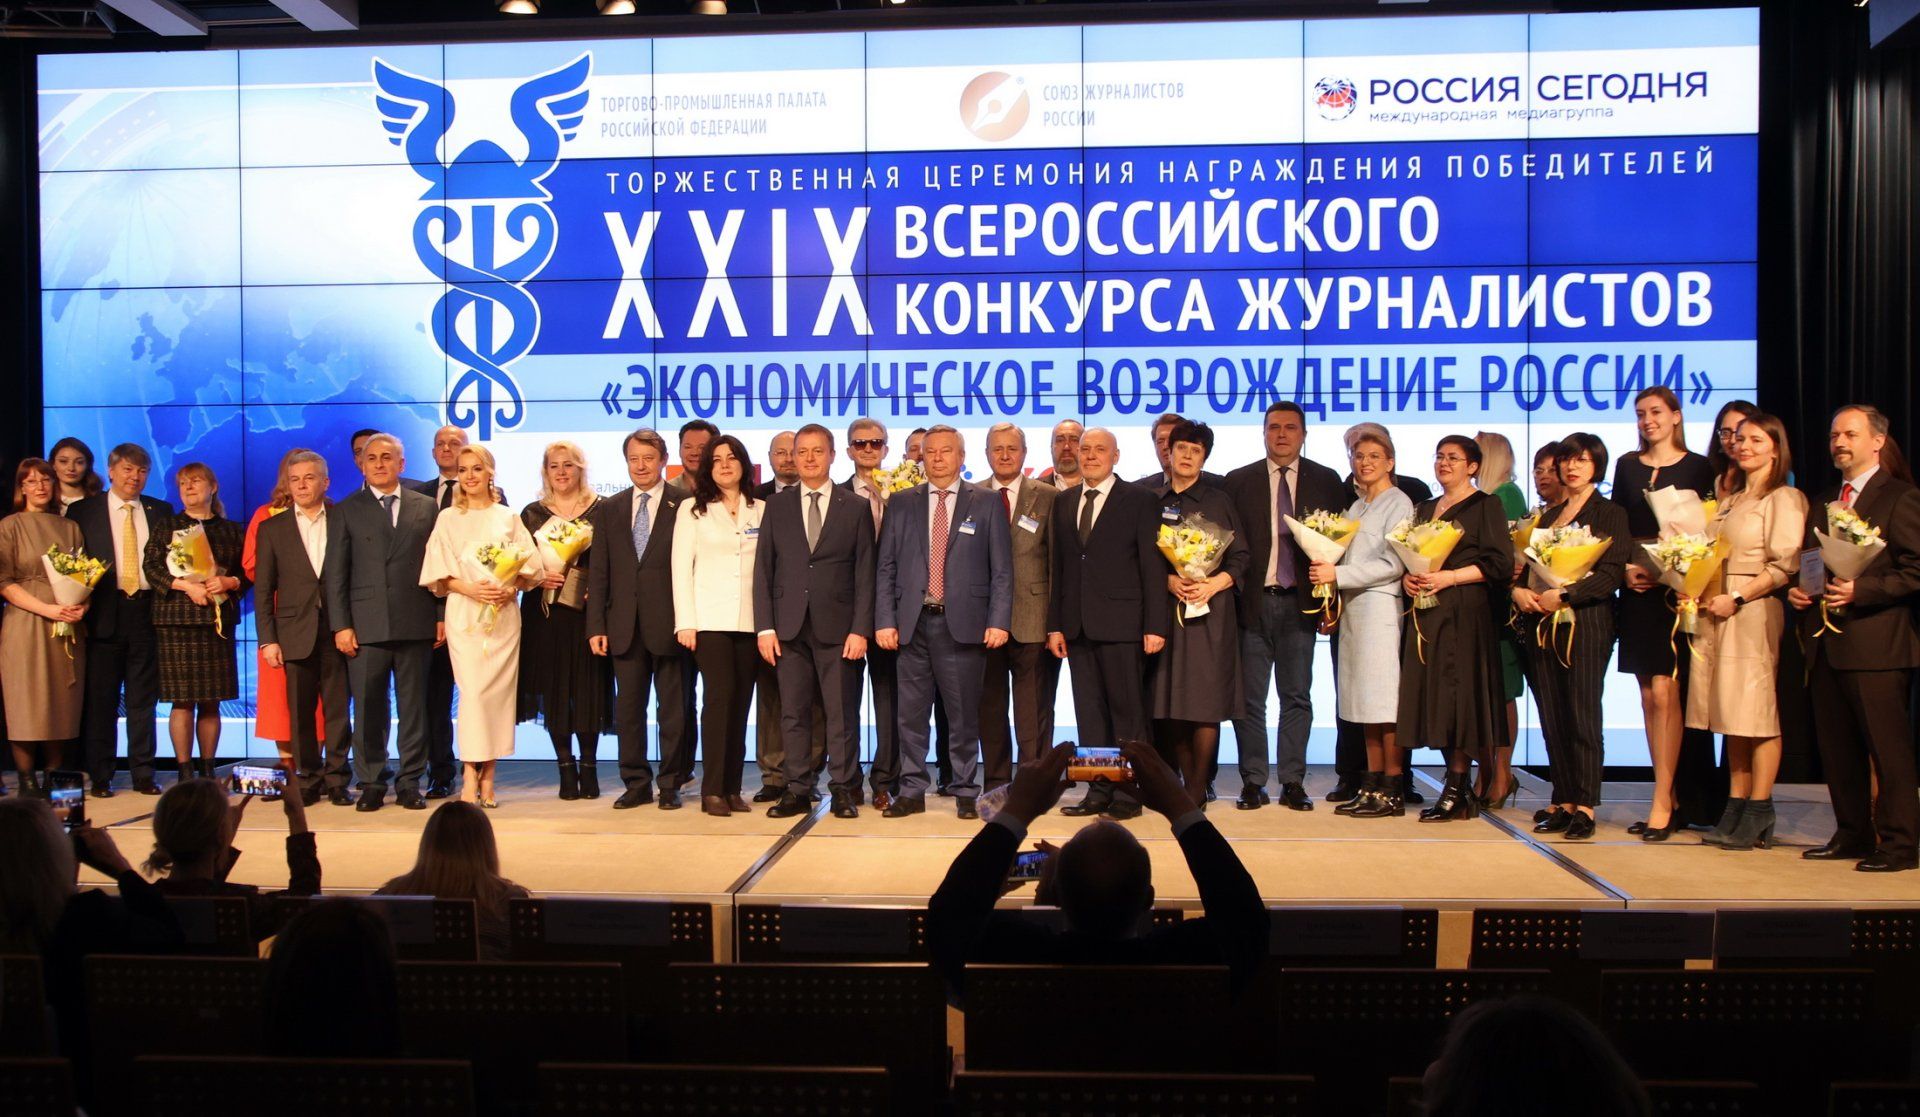 Вручены награды победителям конкурса журналистов «Экономическое возрождение России»